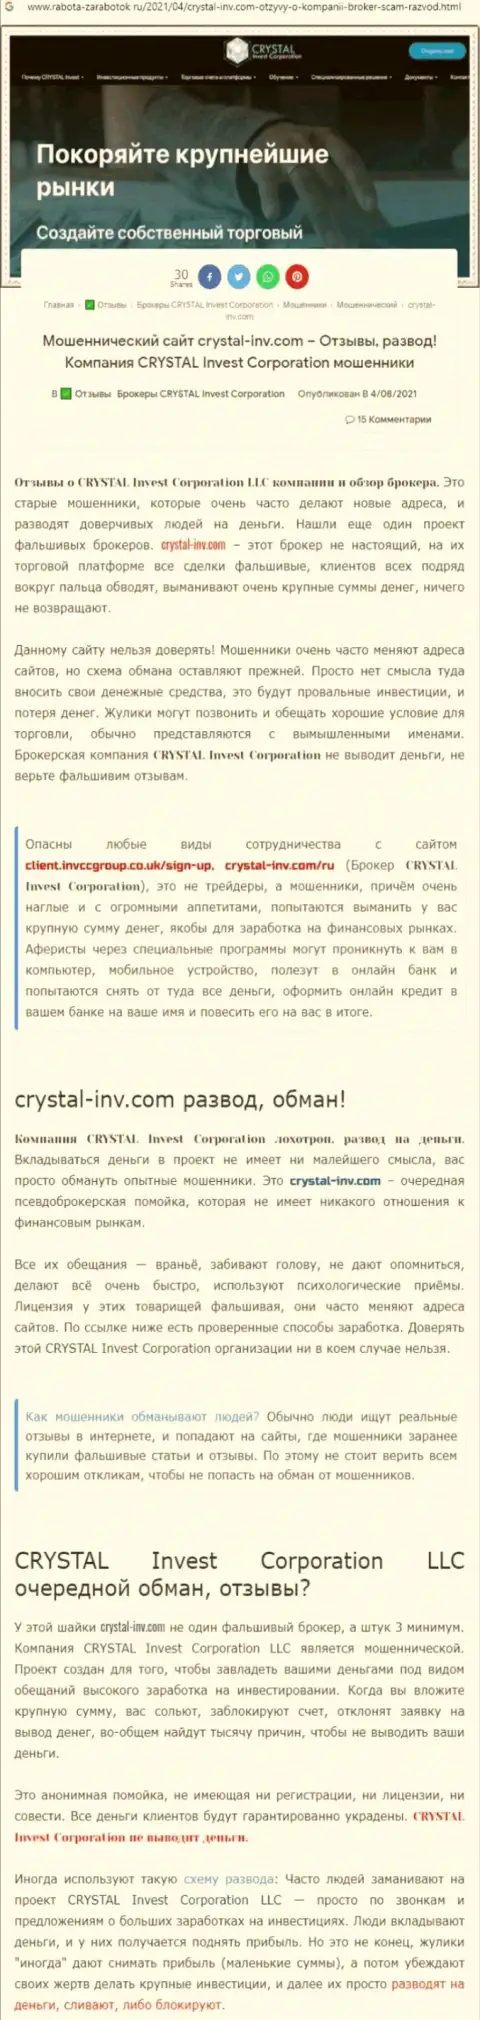 Материал, разоблачающий контору Crystal Invest Corporation, который позаимствован с информационного портала с обзорами различных контор